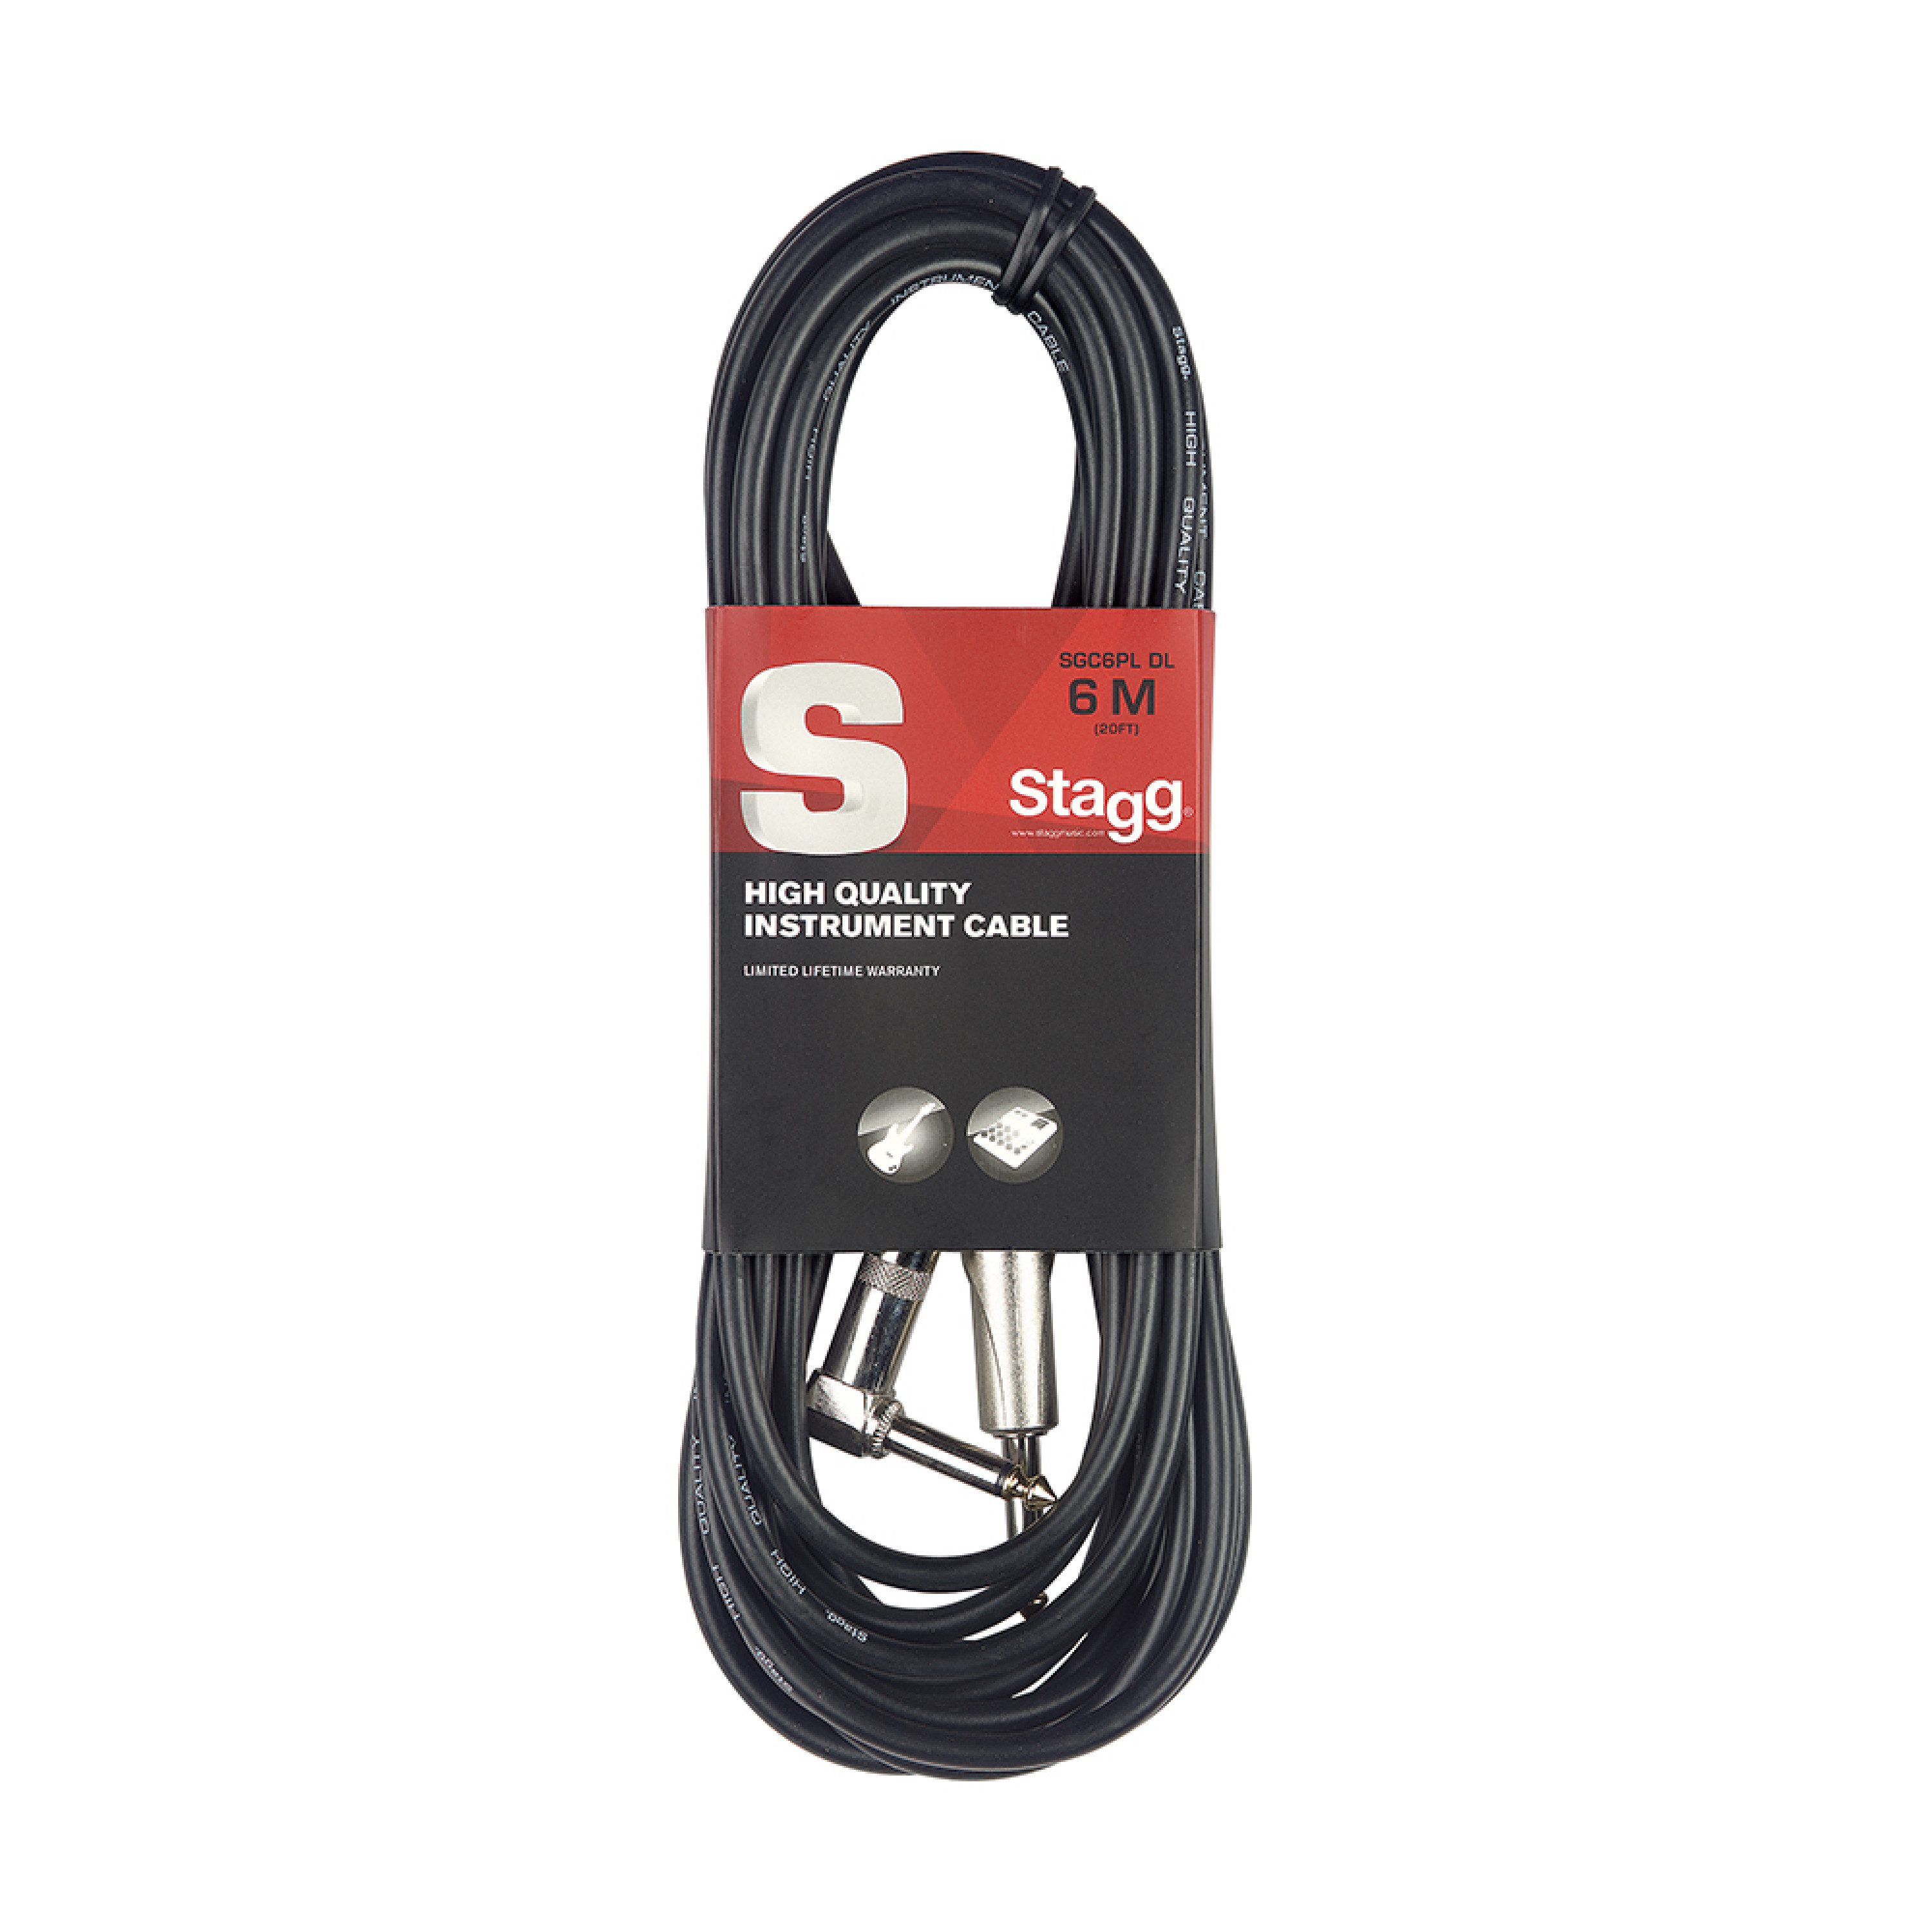 de lujo acodado, 6 m color negro Angulado Stagg SGC6PL DL Cable jack